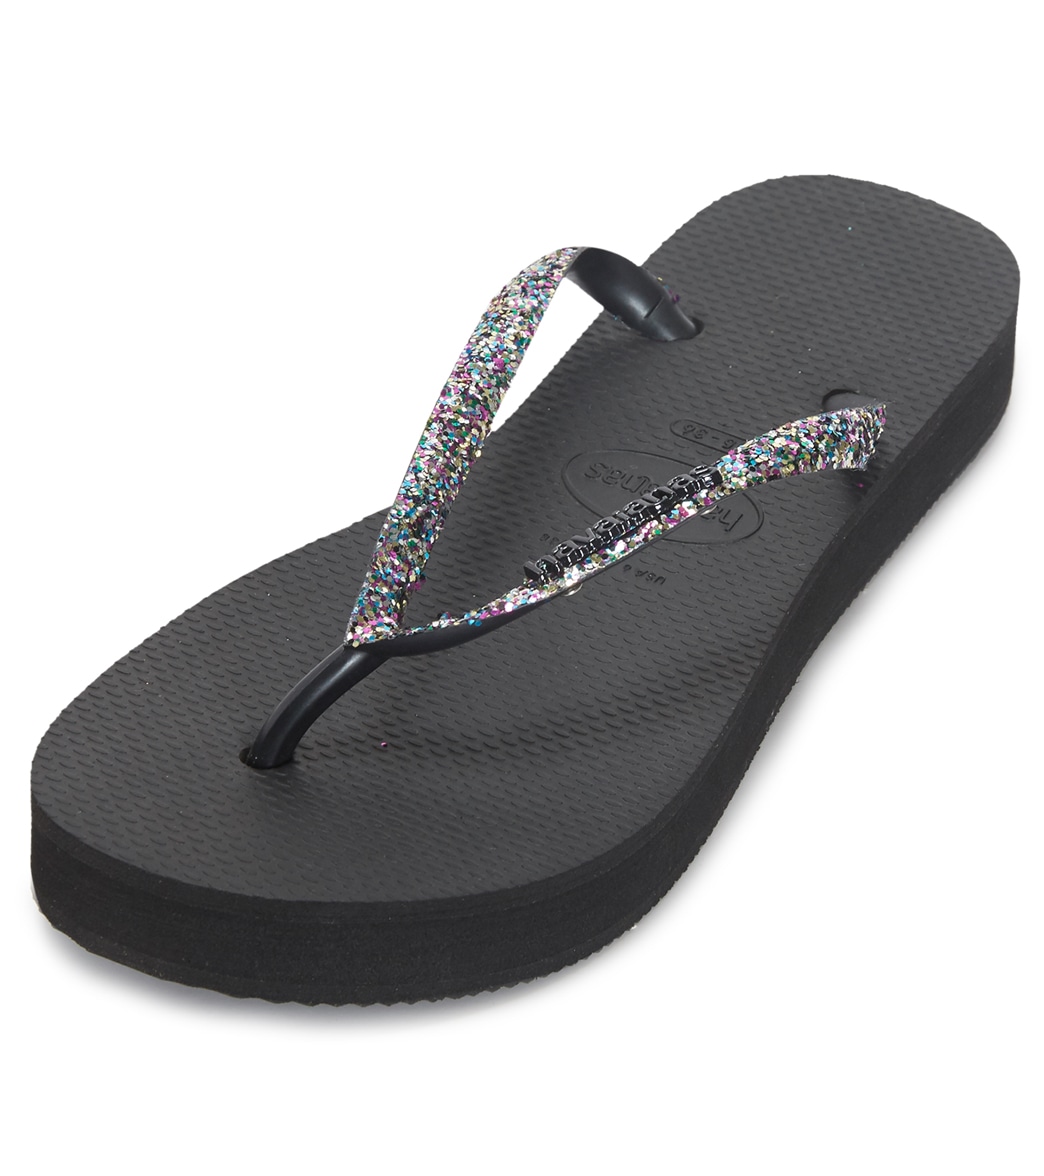 Havaianas Women's Slim Flatform Sparkle Sandals - Black 35/36 - Swimoutlet.com